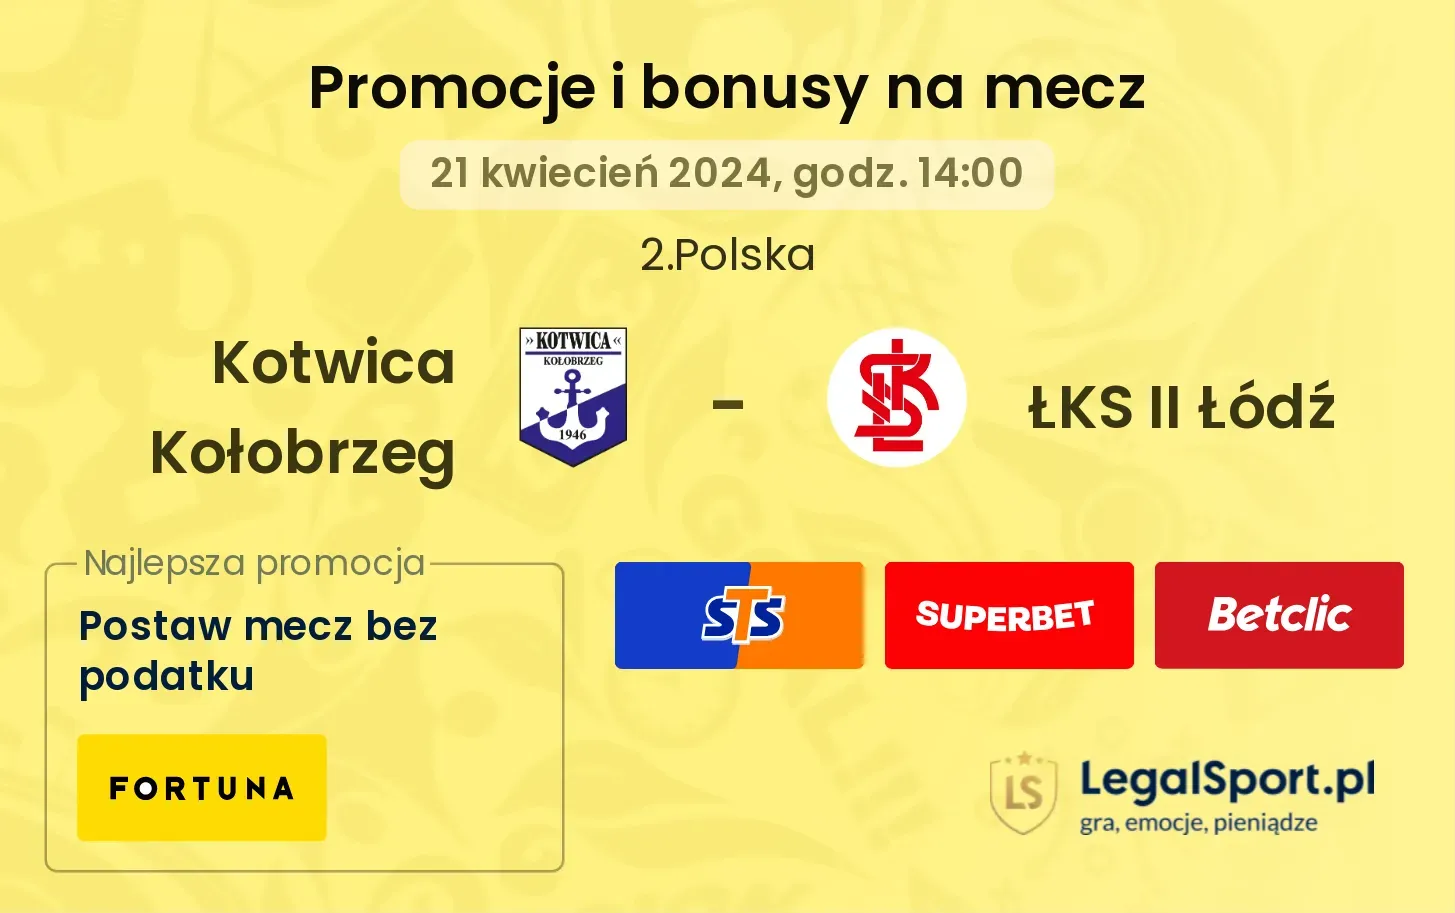 Kotwica Kołobrzeg - ŁKS II Łódź promocje bonusy na mecz